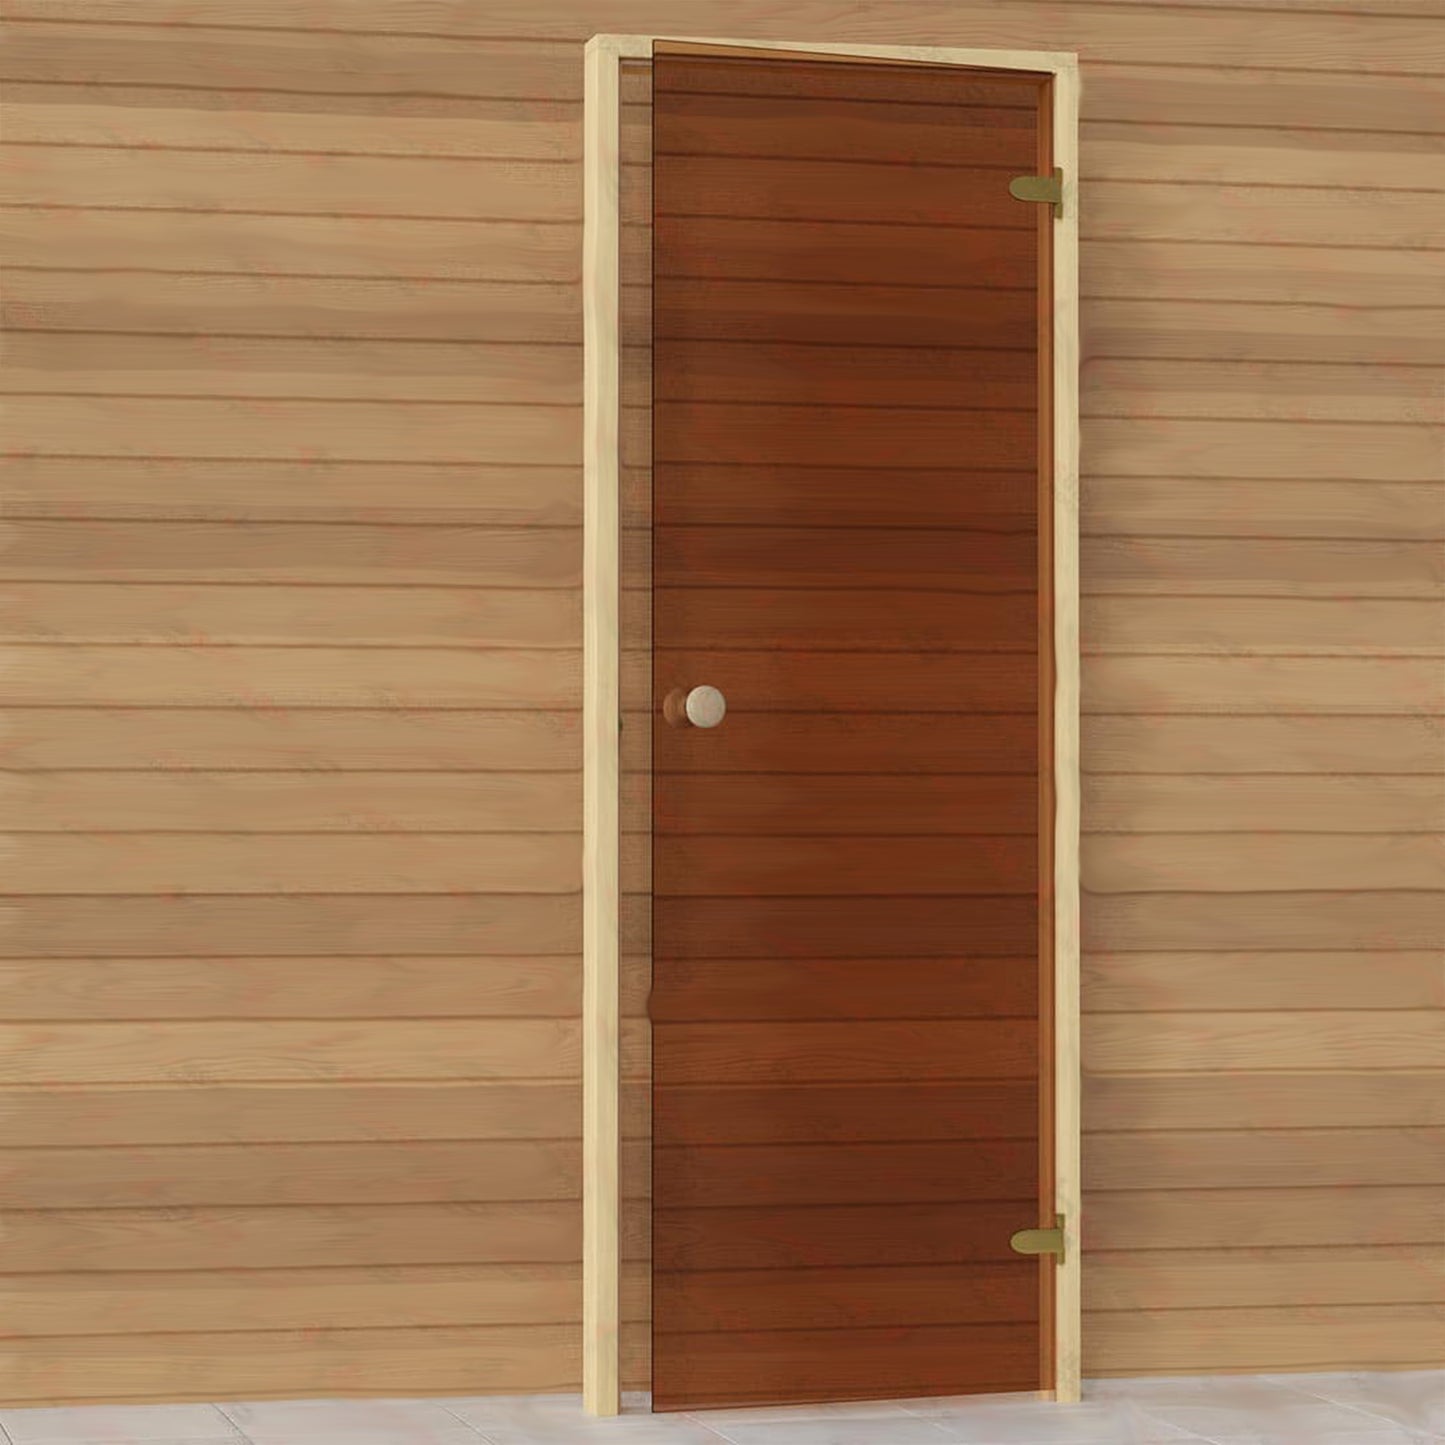 Sauna door with bronze glass right side.